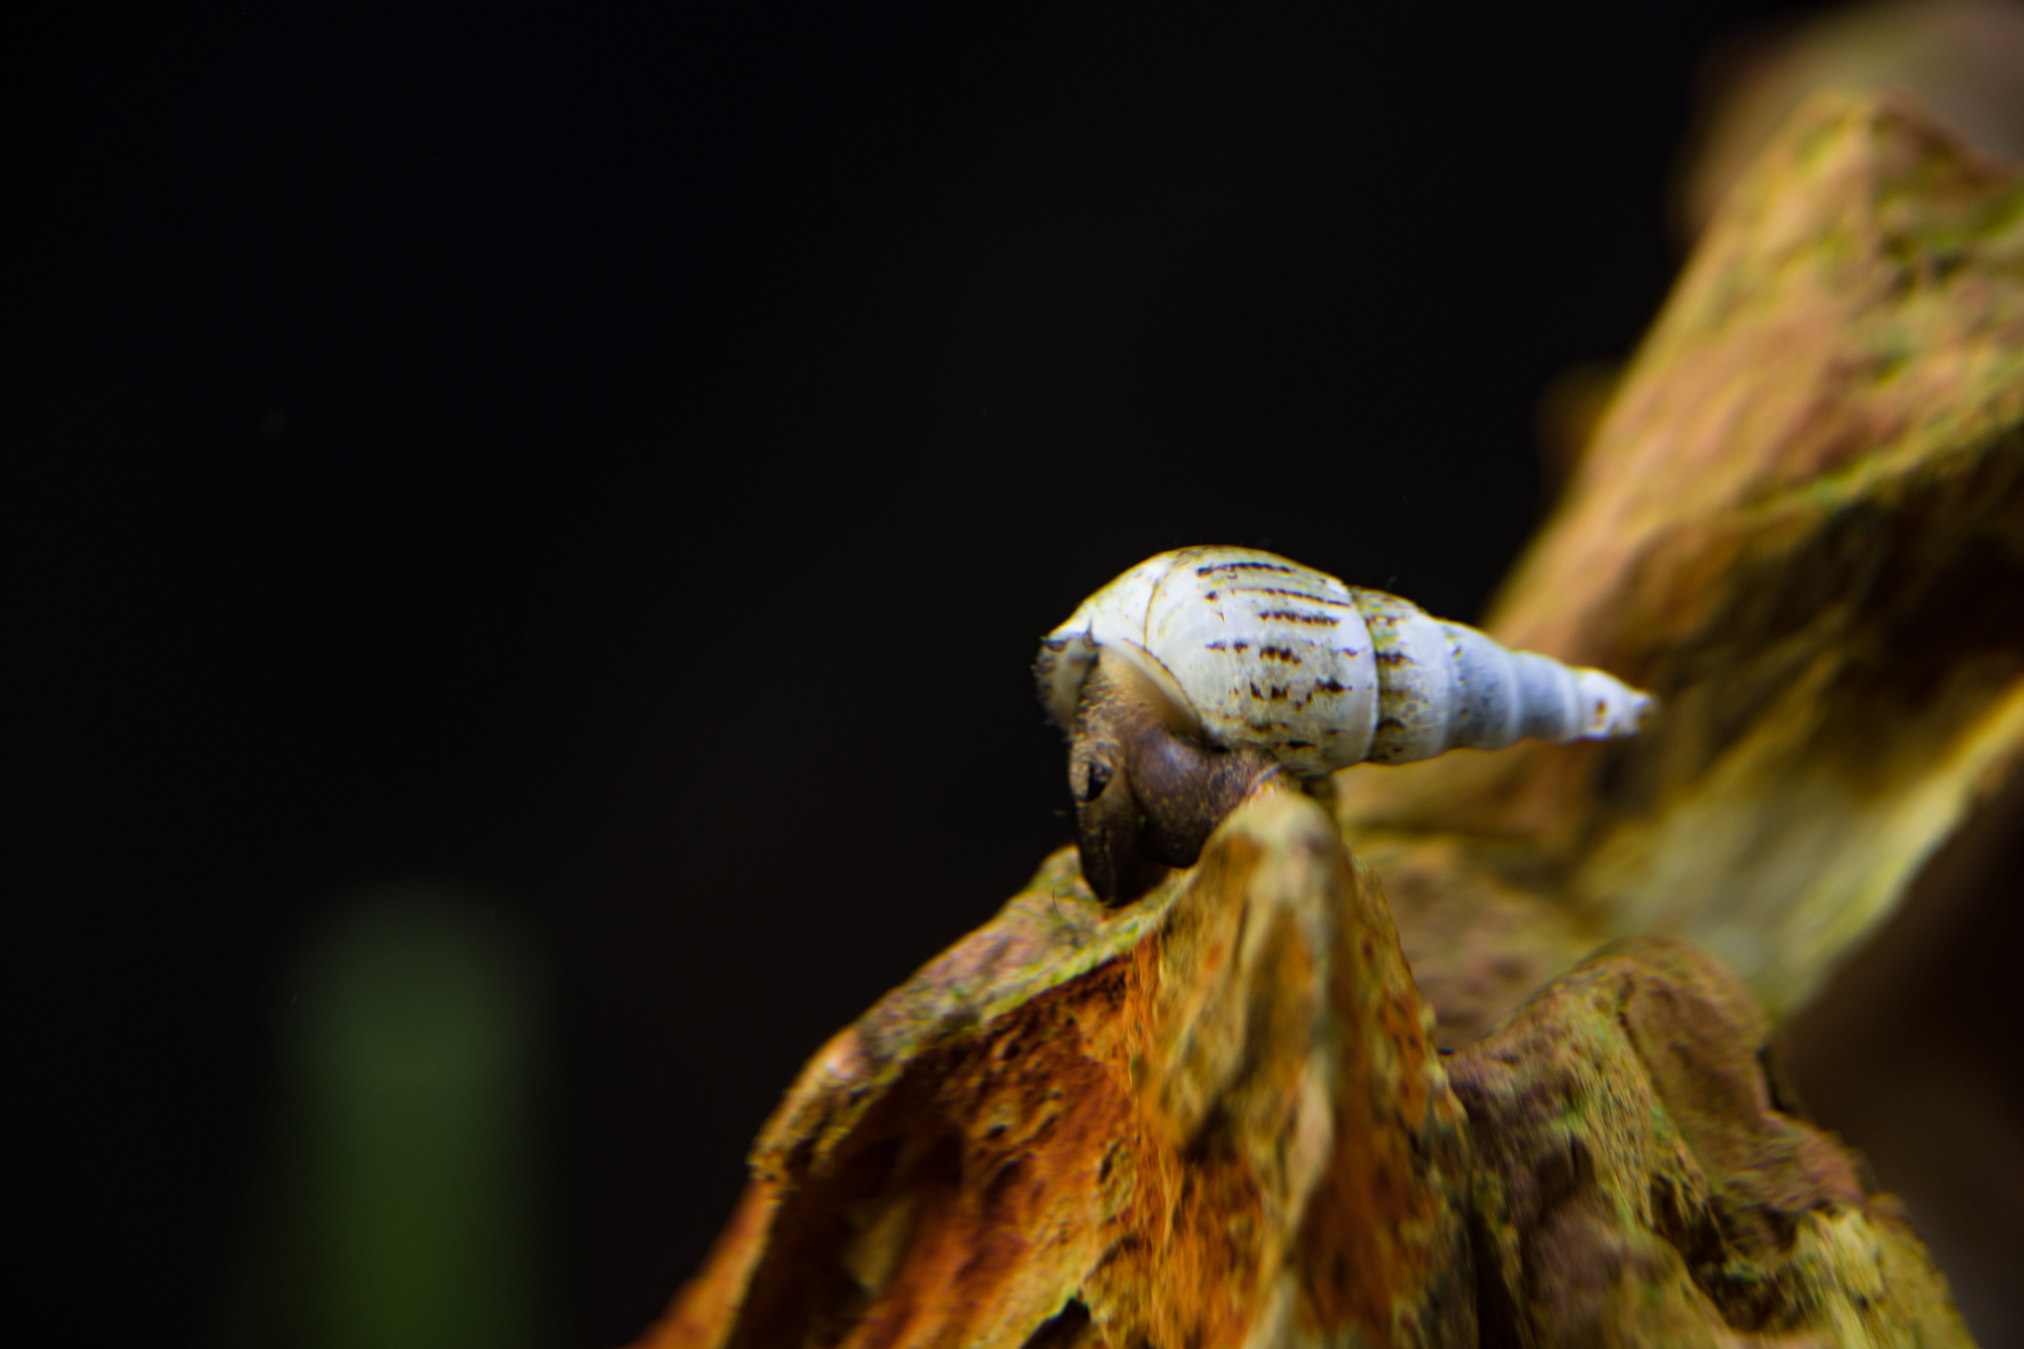 Malaysian Trumpet Snails